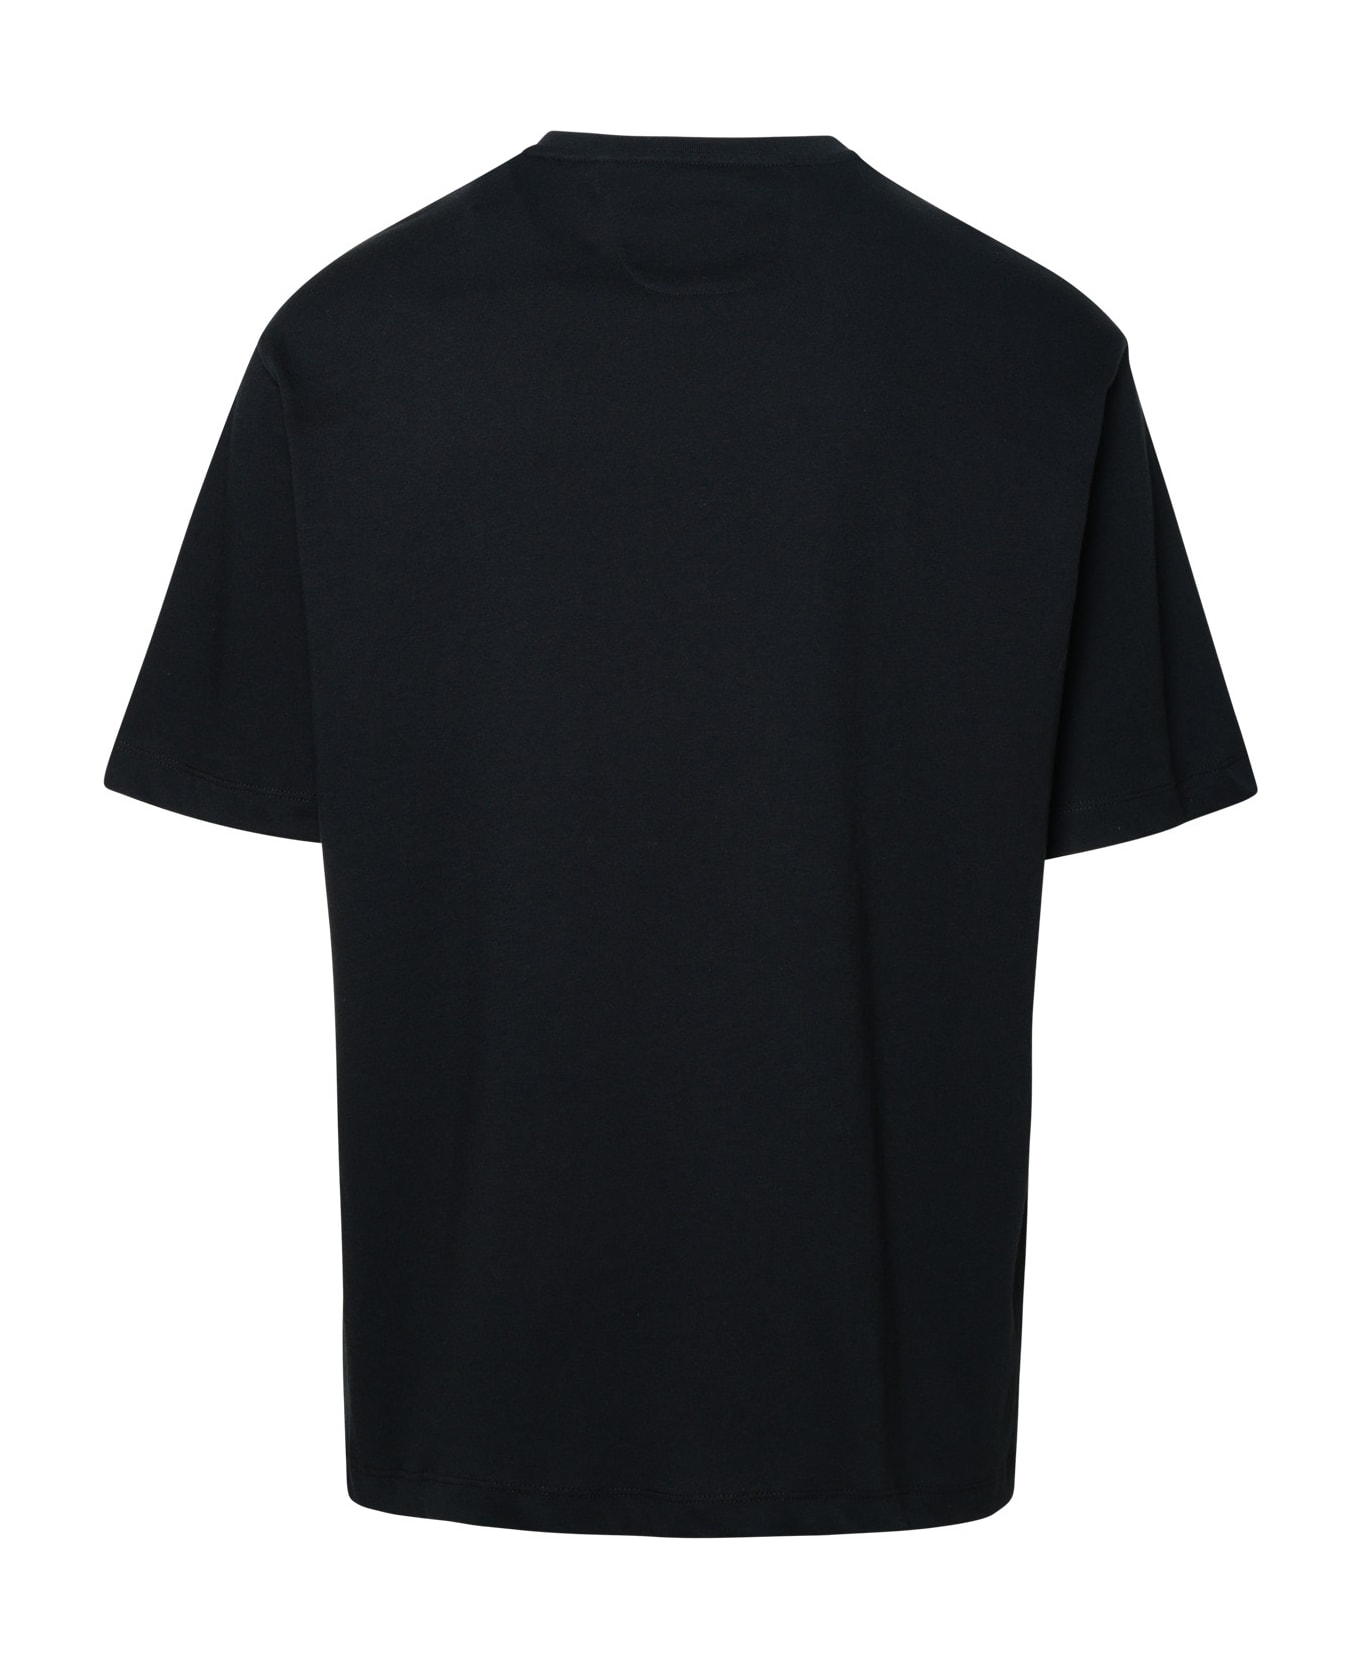 Ferrari Black Cotton T-shirt - Black